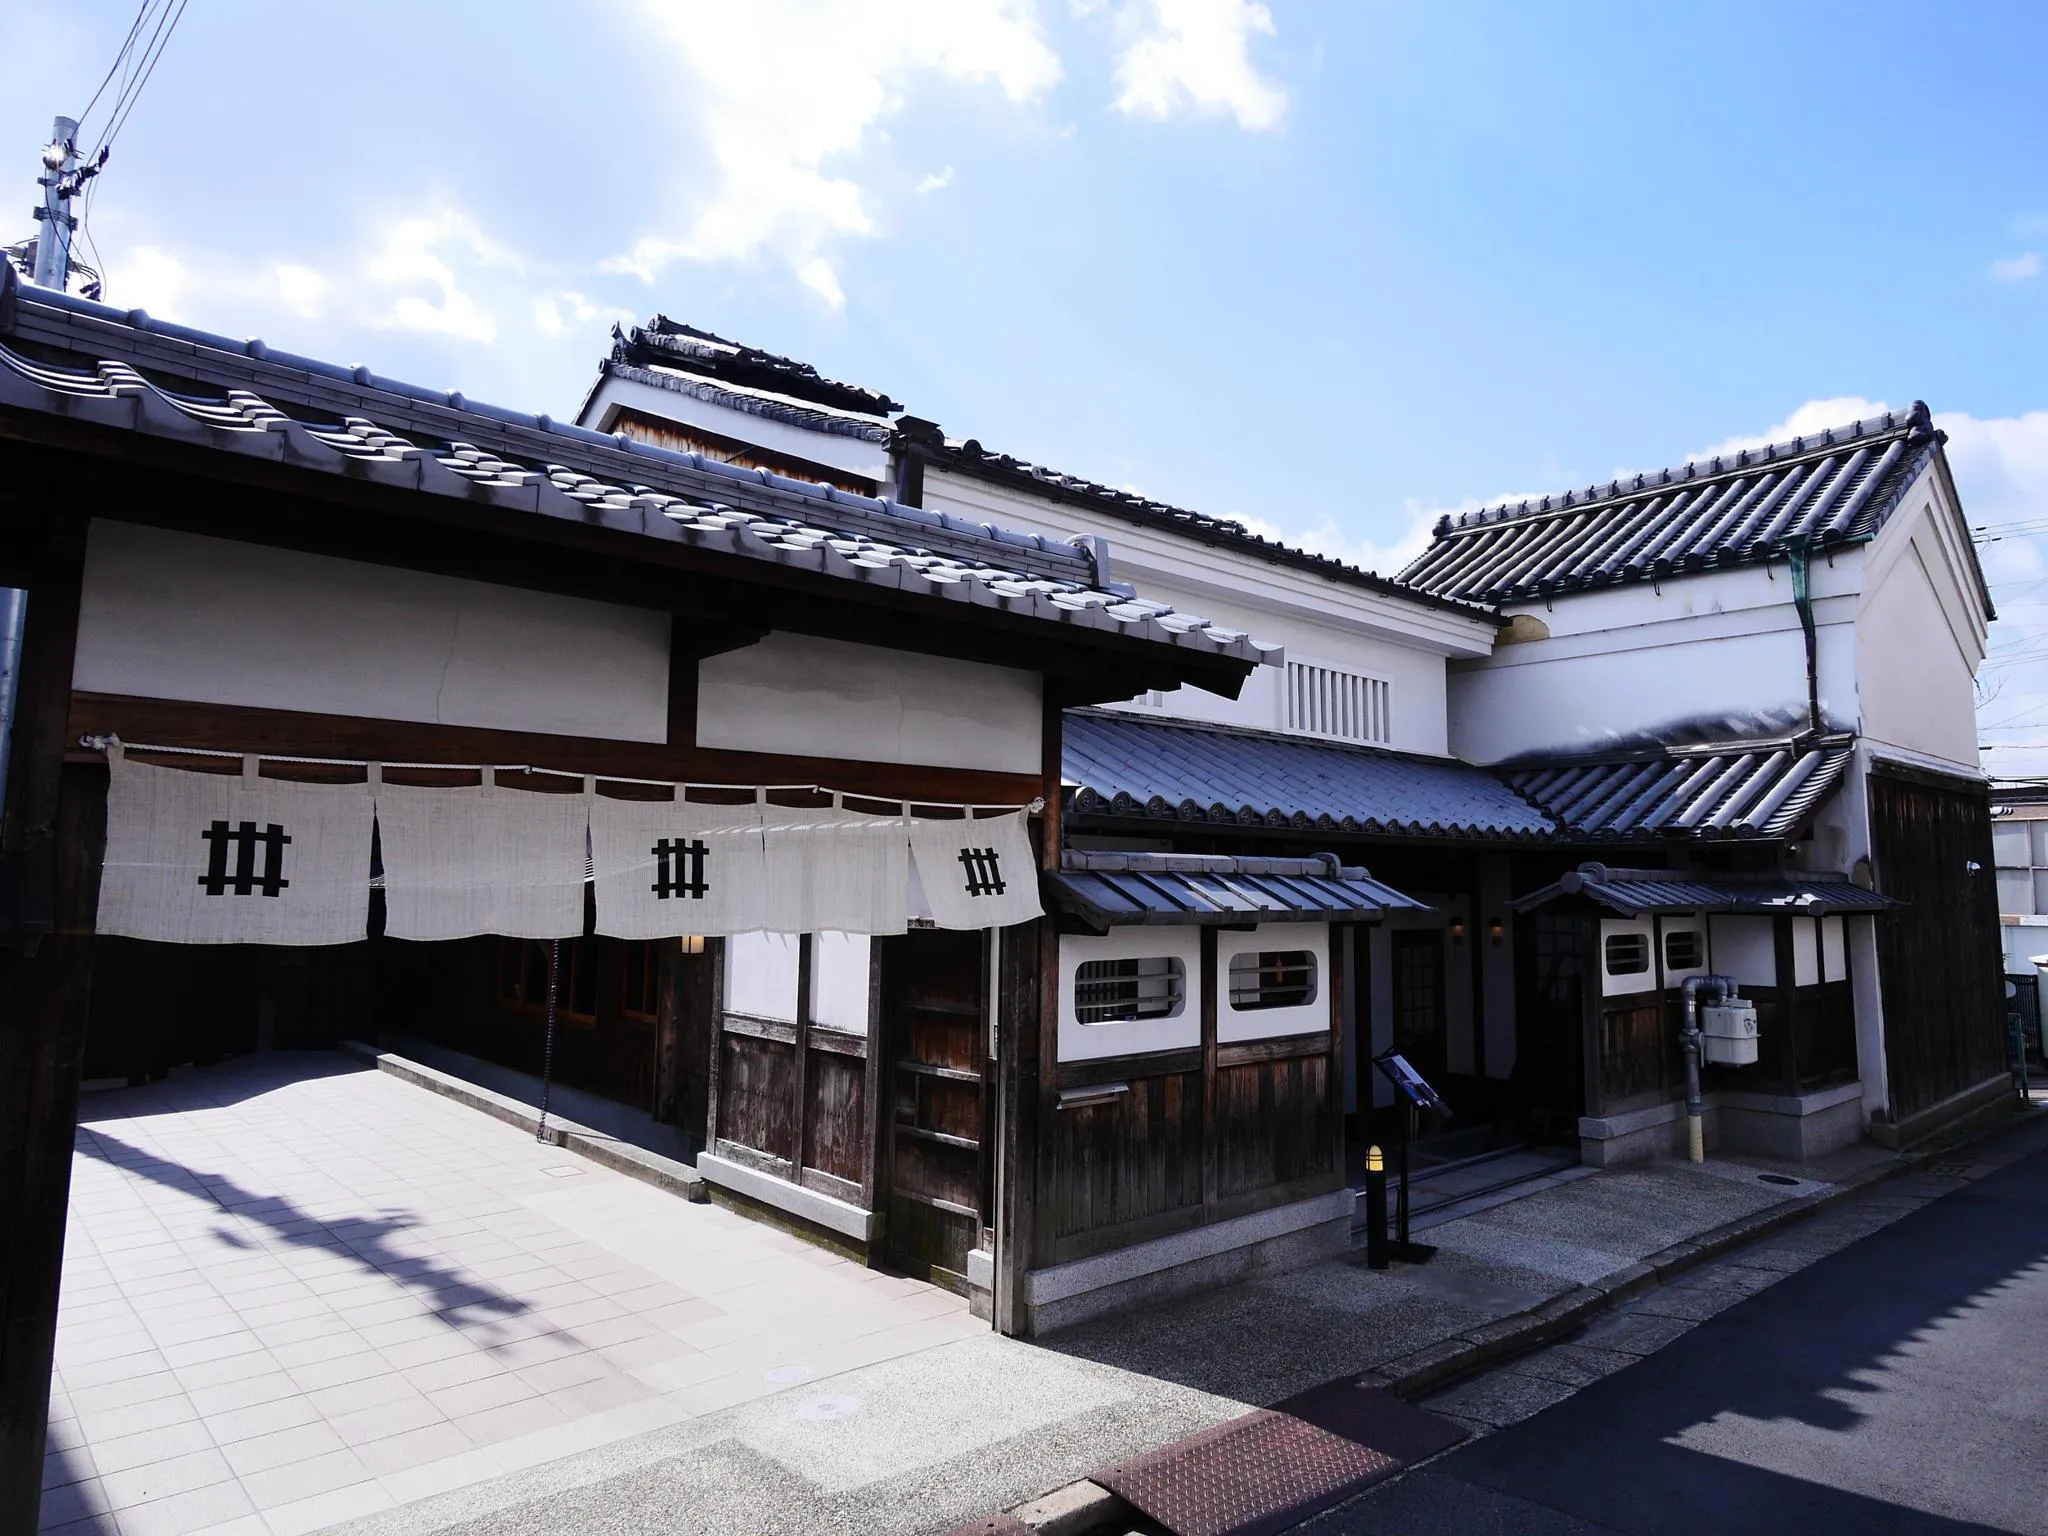 奈良で人気のホテル 旅館 21年 宿泊予約ならrelux